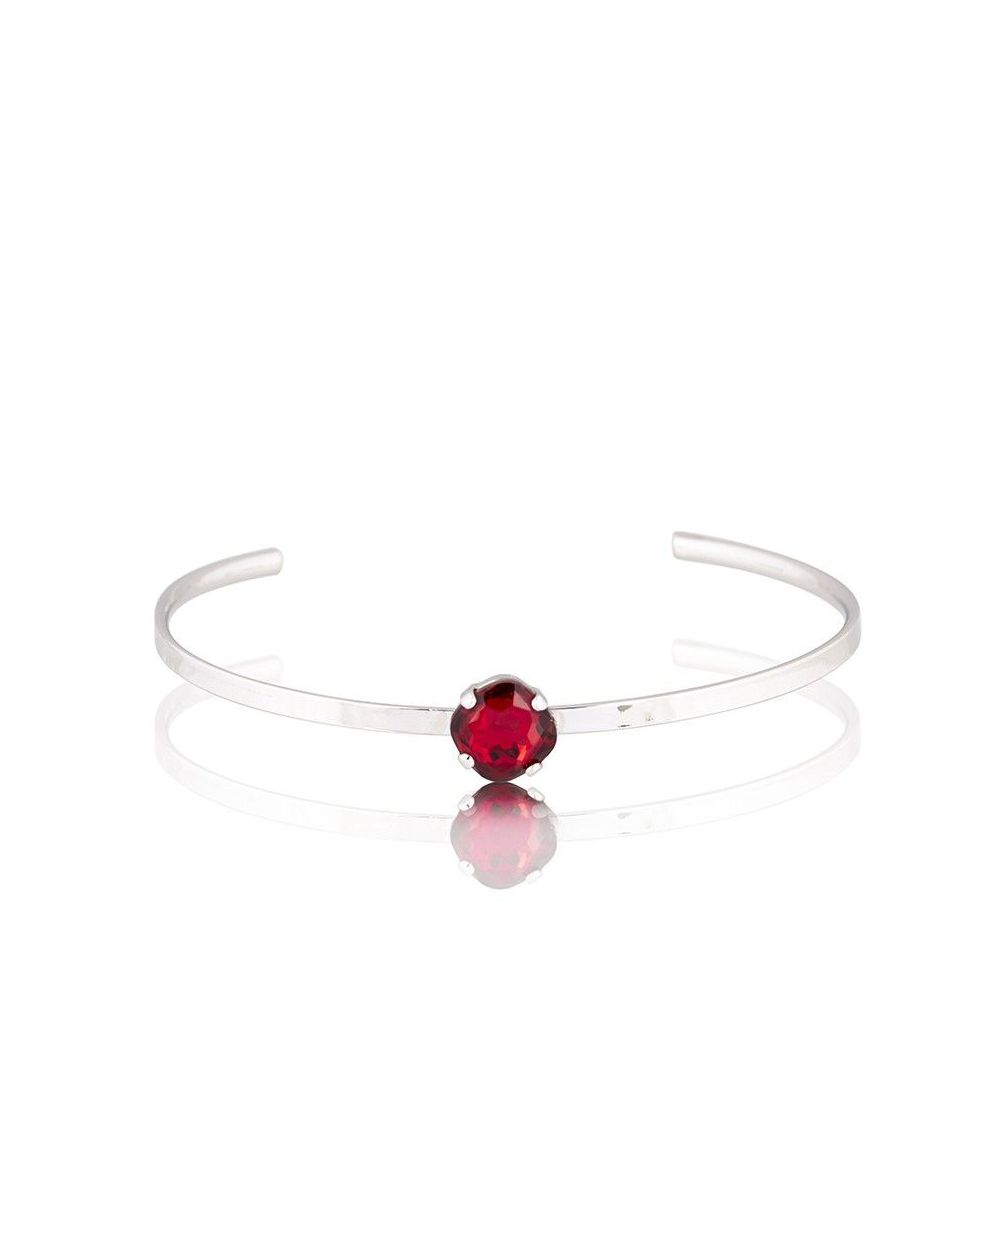 Andrea Marazzini - Bracelet cristal Swarovski Mini Red